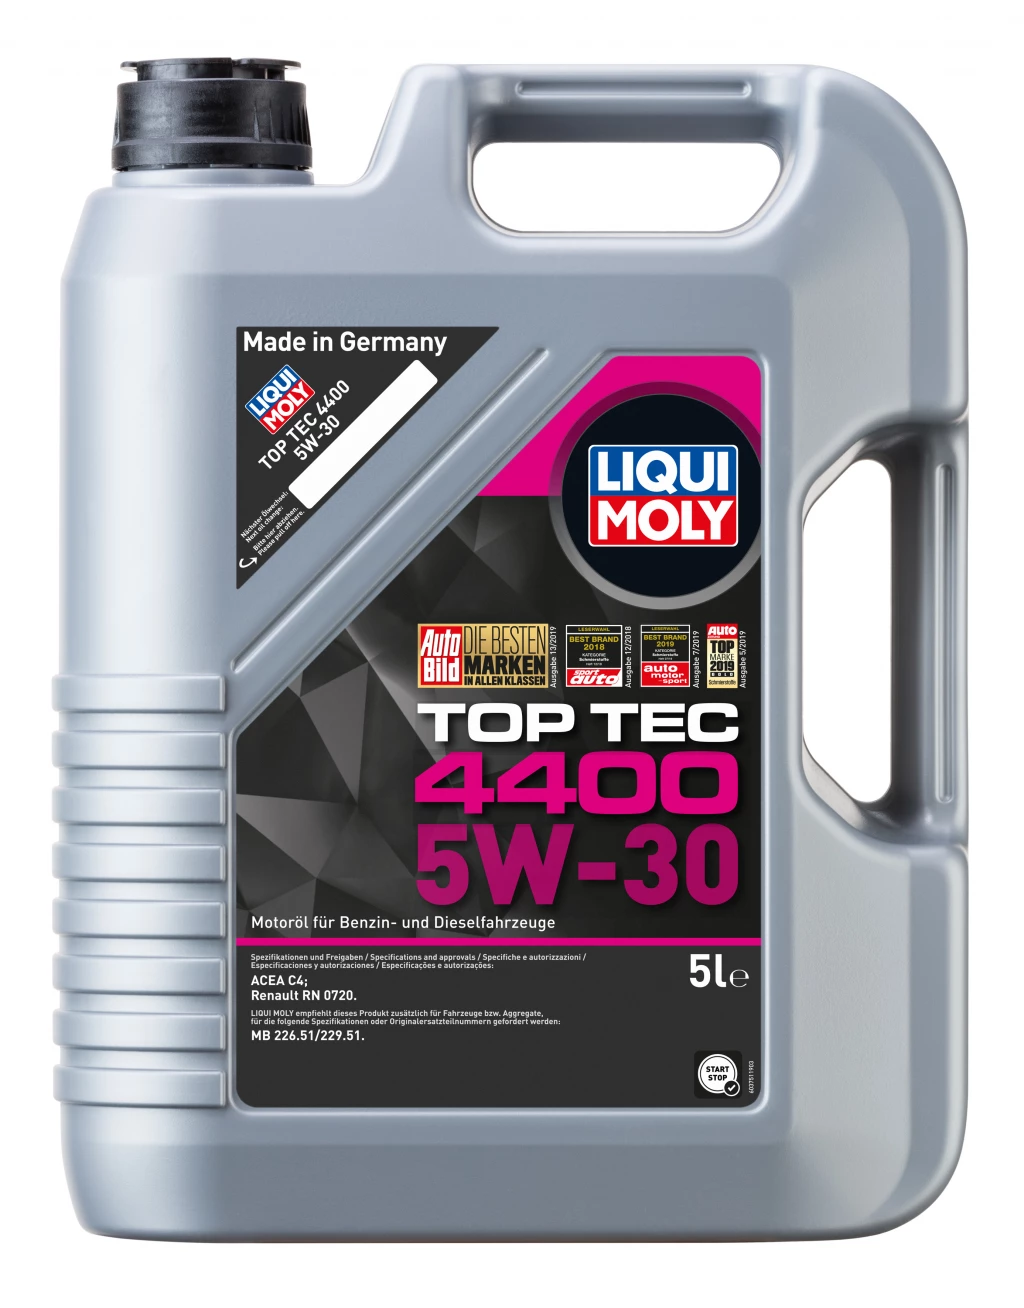 Моторное масло Liqui Moly Top Tec 4400 5W-30 синтетическое 5 л